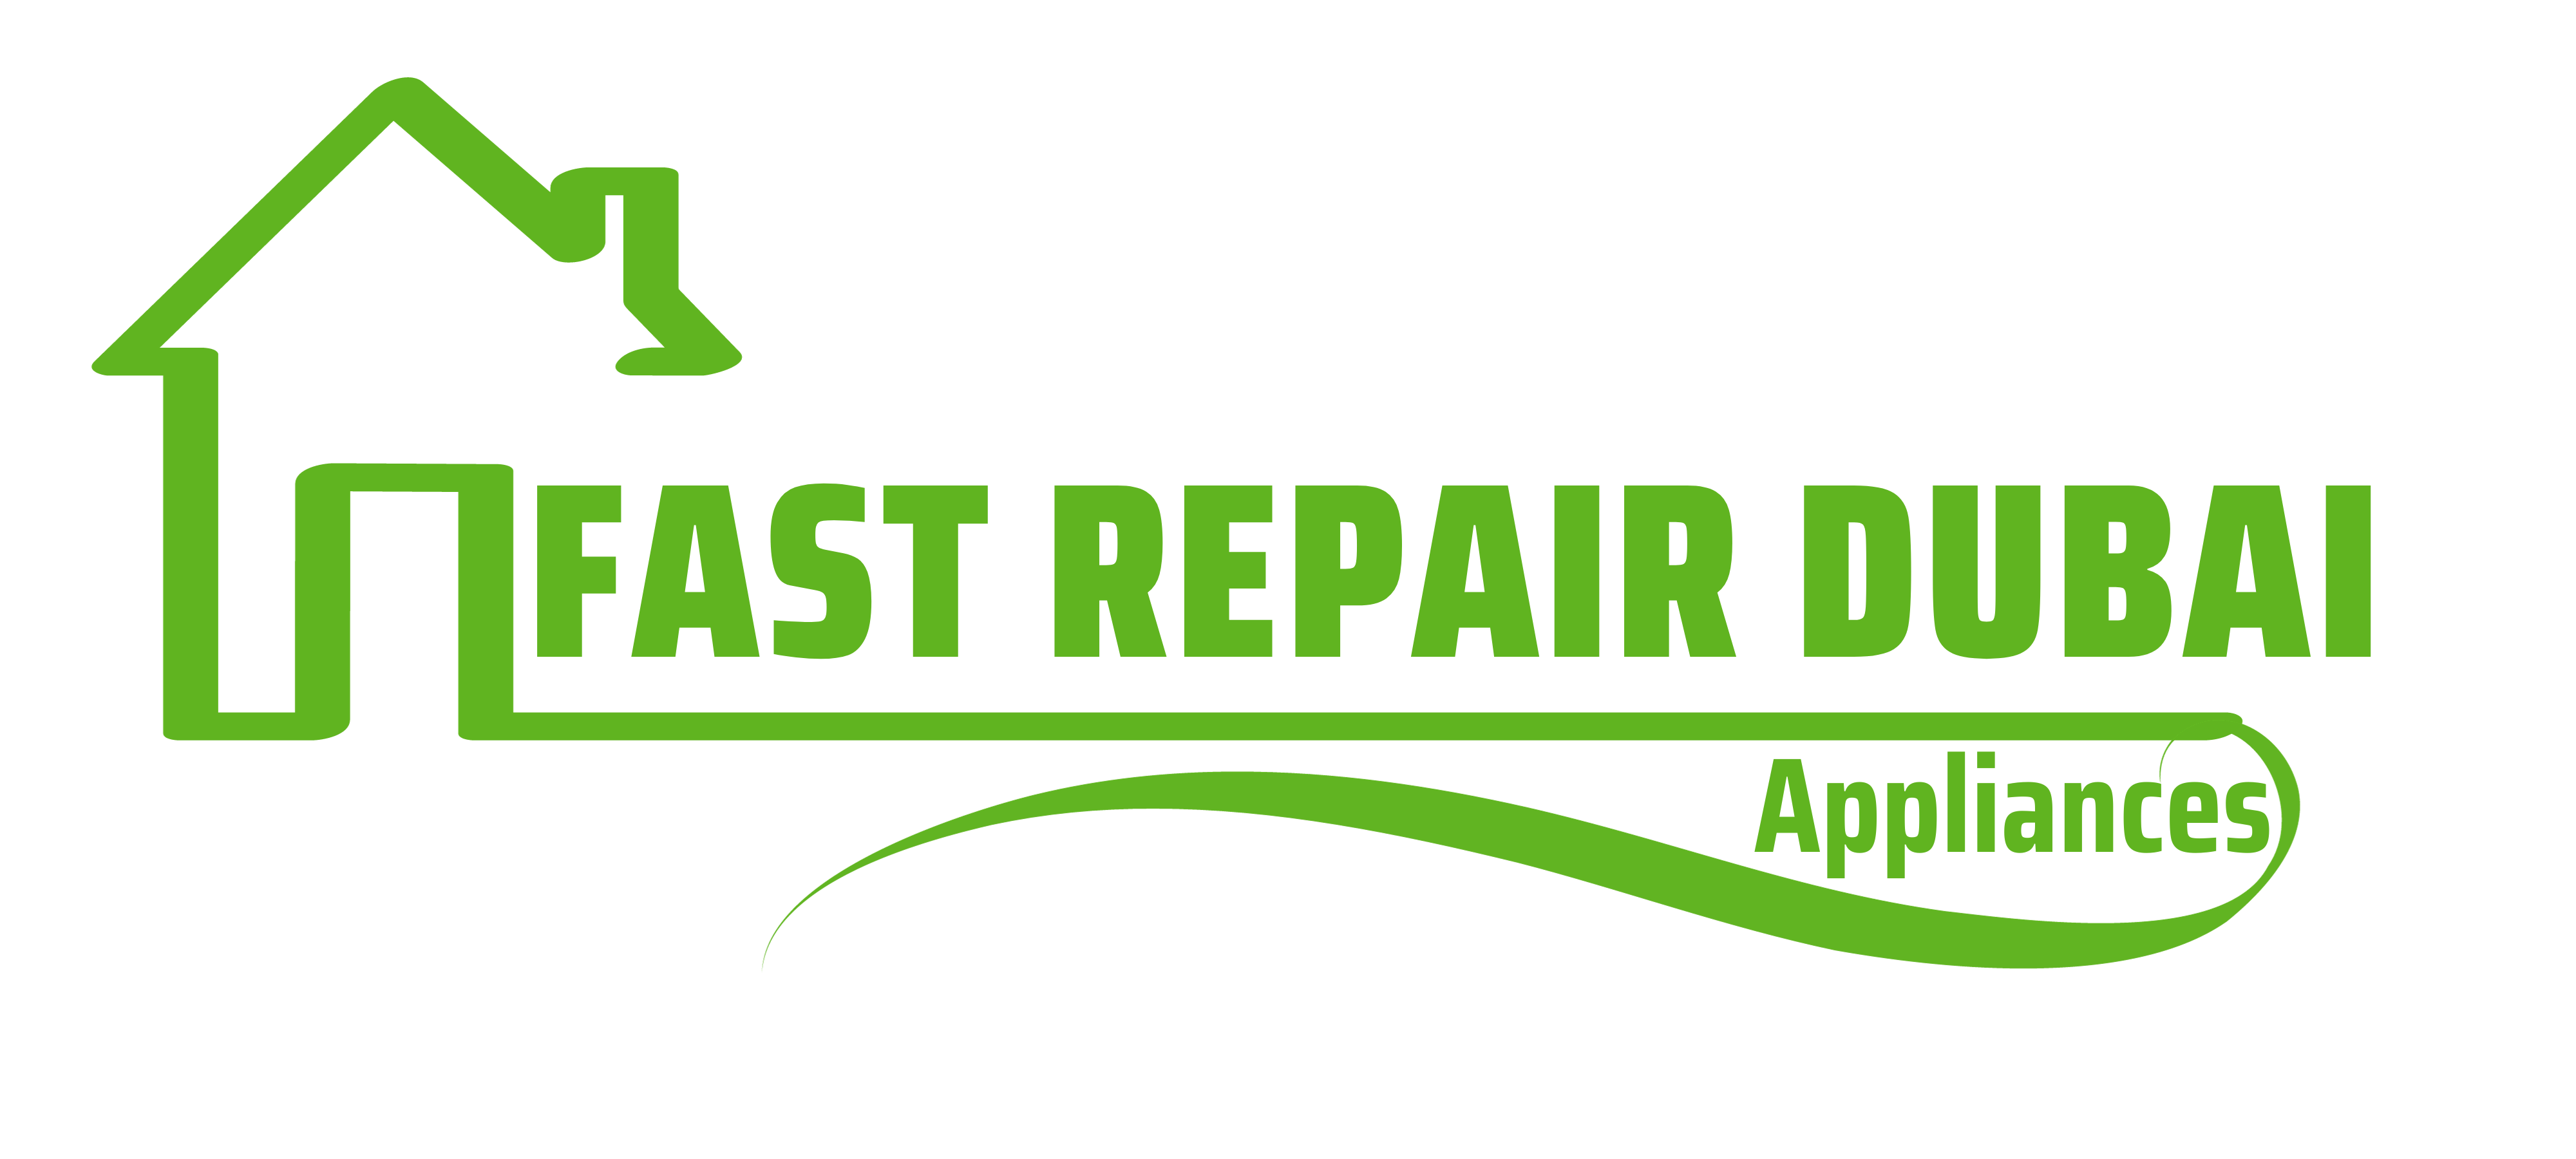 Fast Repair Home Appliances Services In Dubai